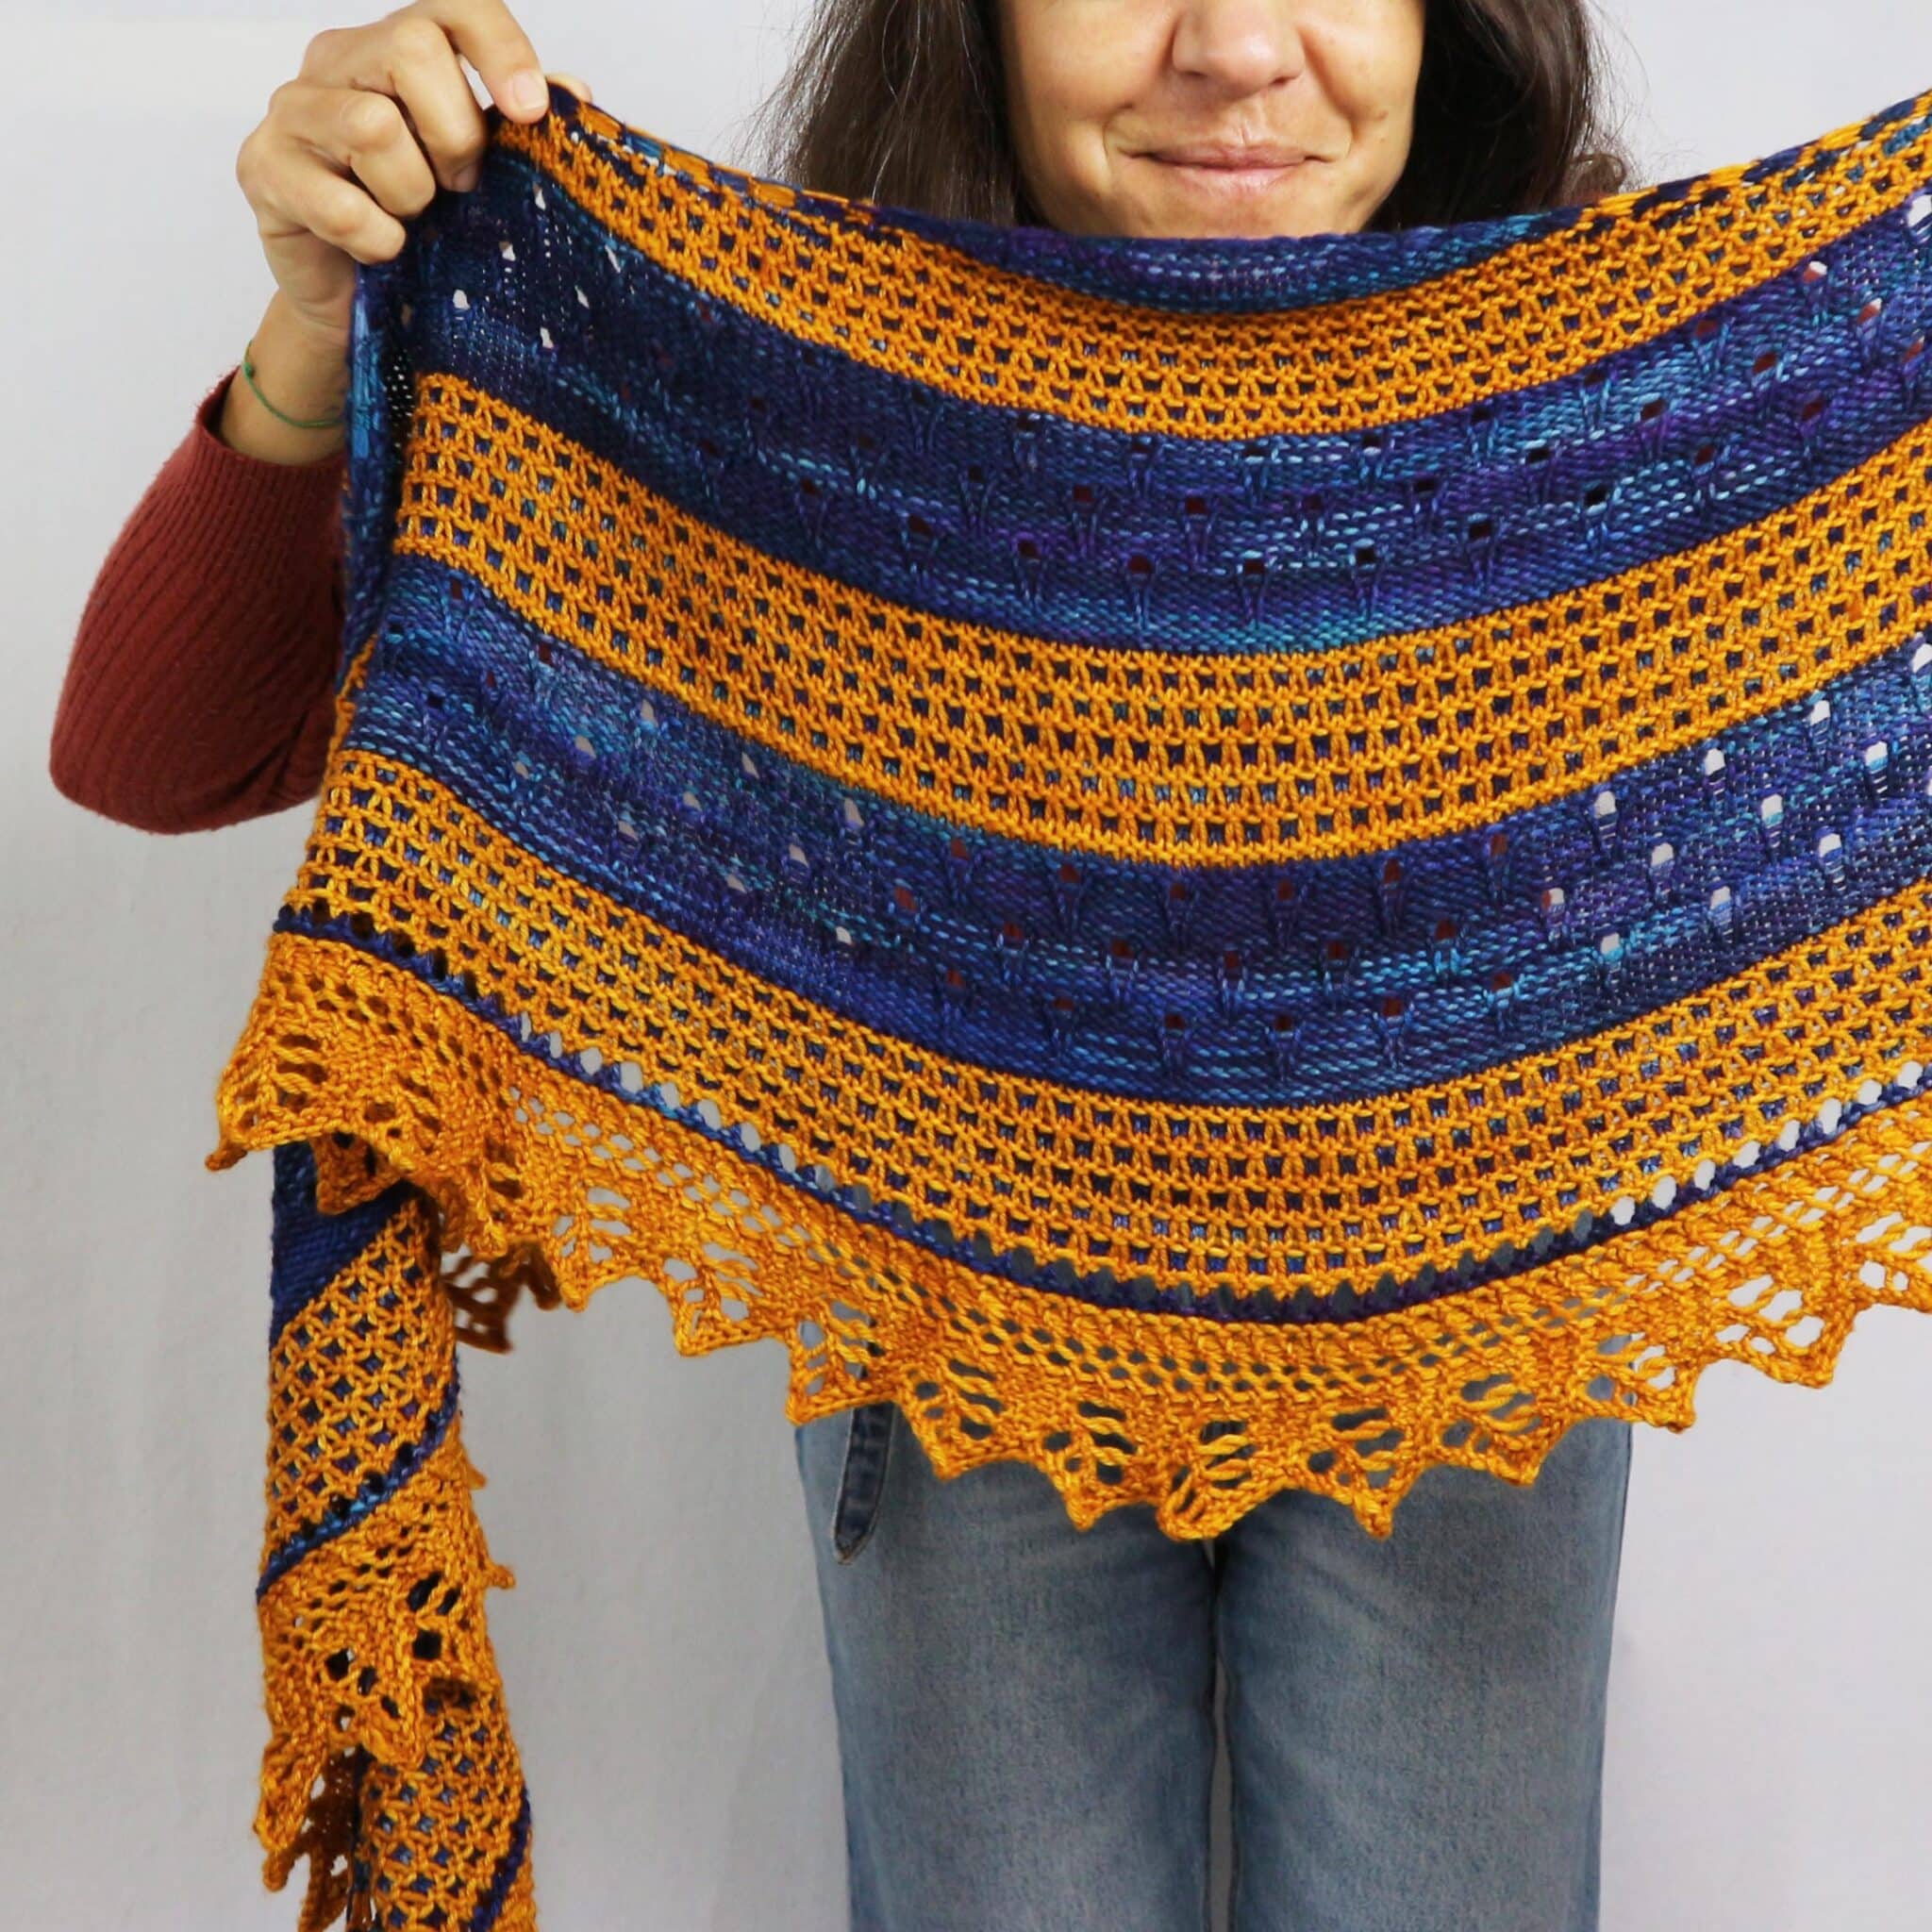 Earth Shawl knitting pattern